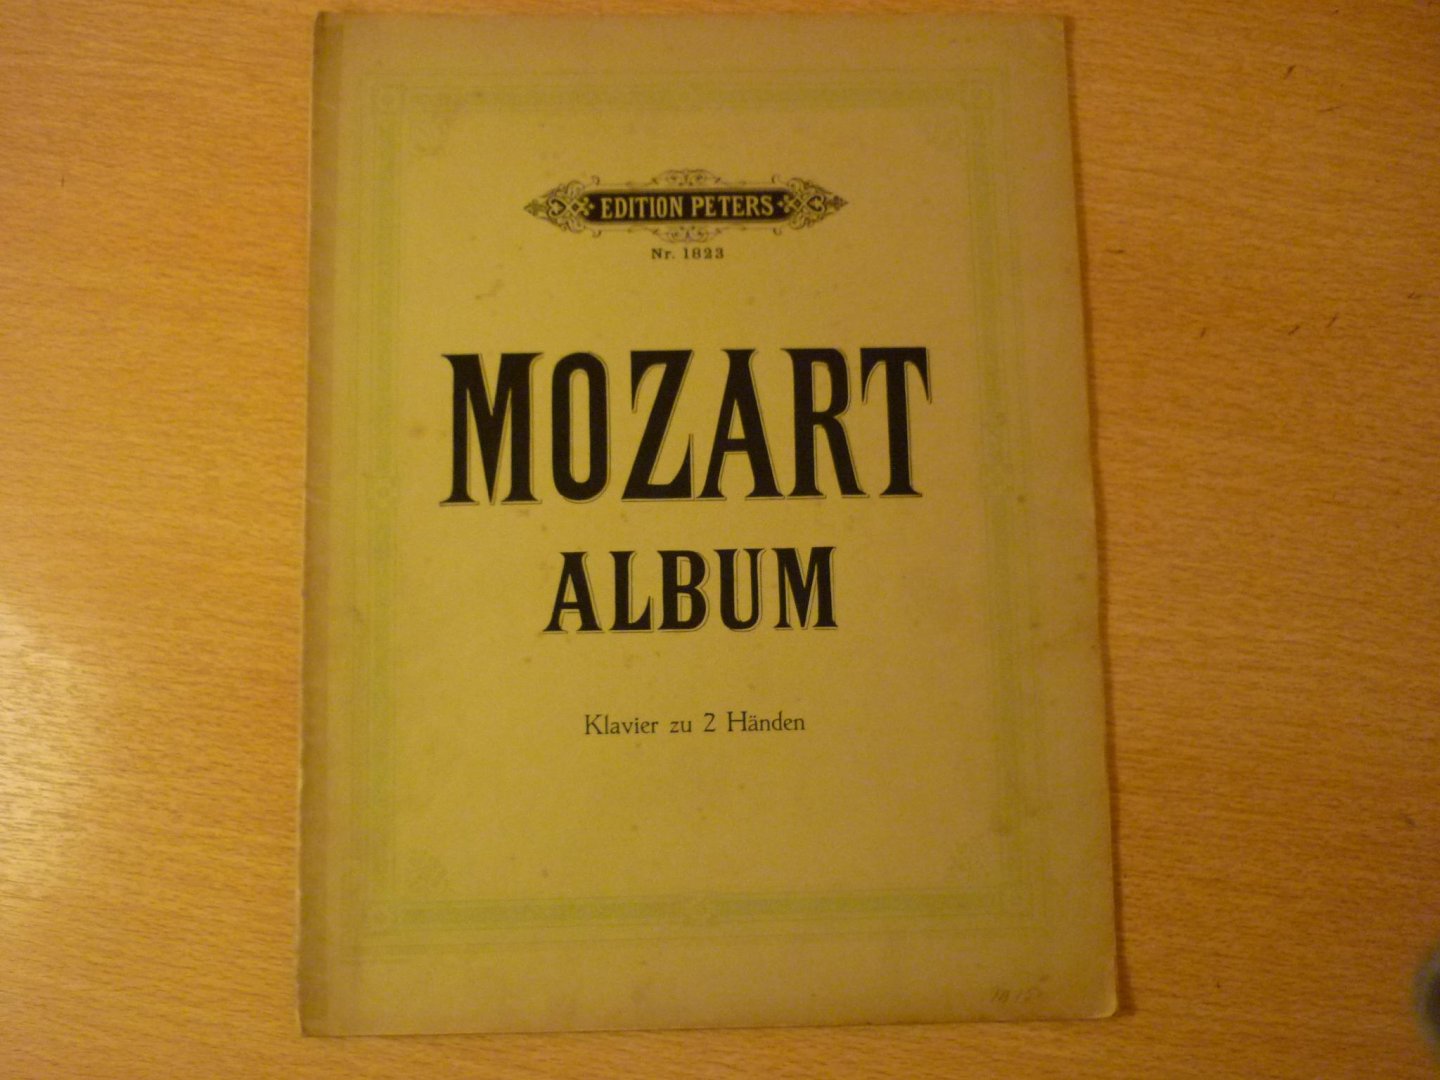 Mozart. W.A. (1756 – 1791) - Album; Sammlung Beliebter Stucke fur Klavier ze 2 handen (neue revidierte ausgabe)